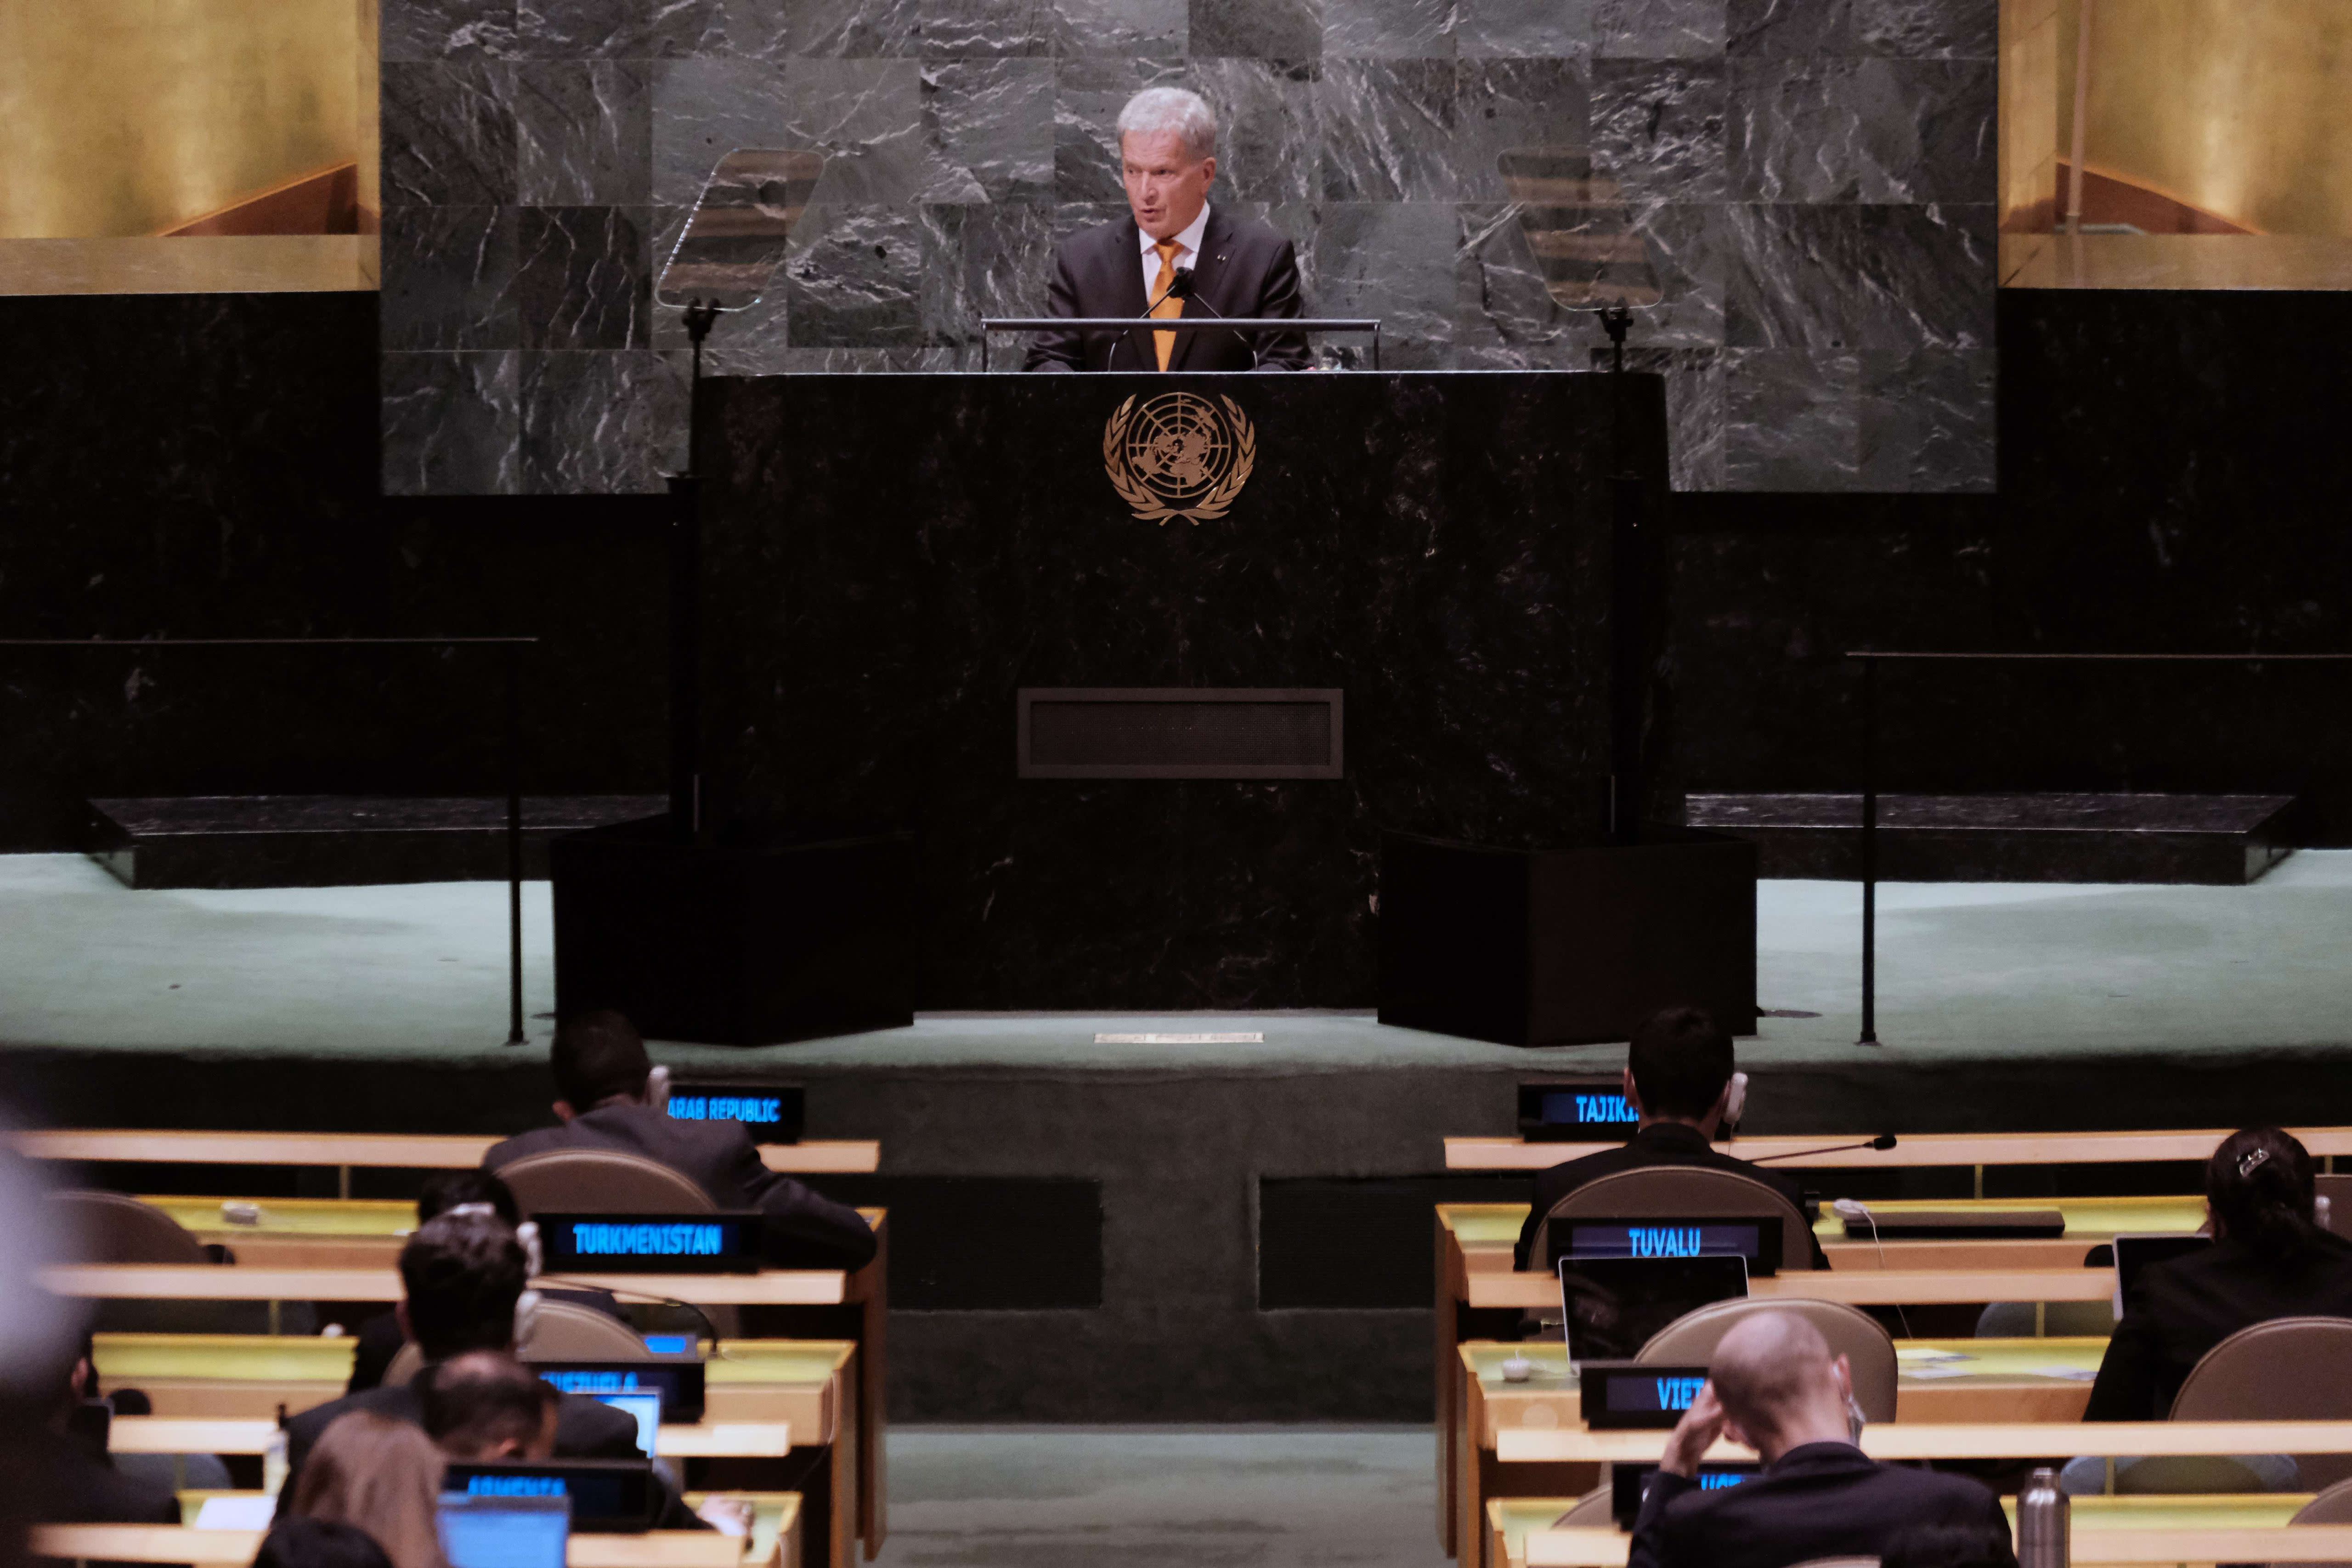 Der finnische Präsident fordert globale Verantwortung in der UN-Generalversammlung